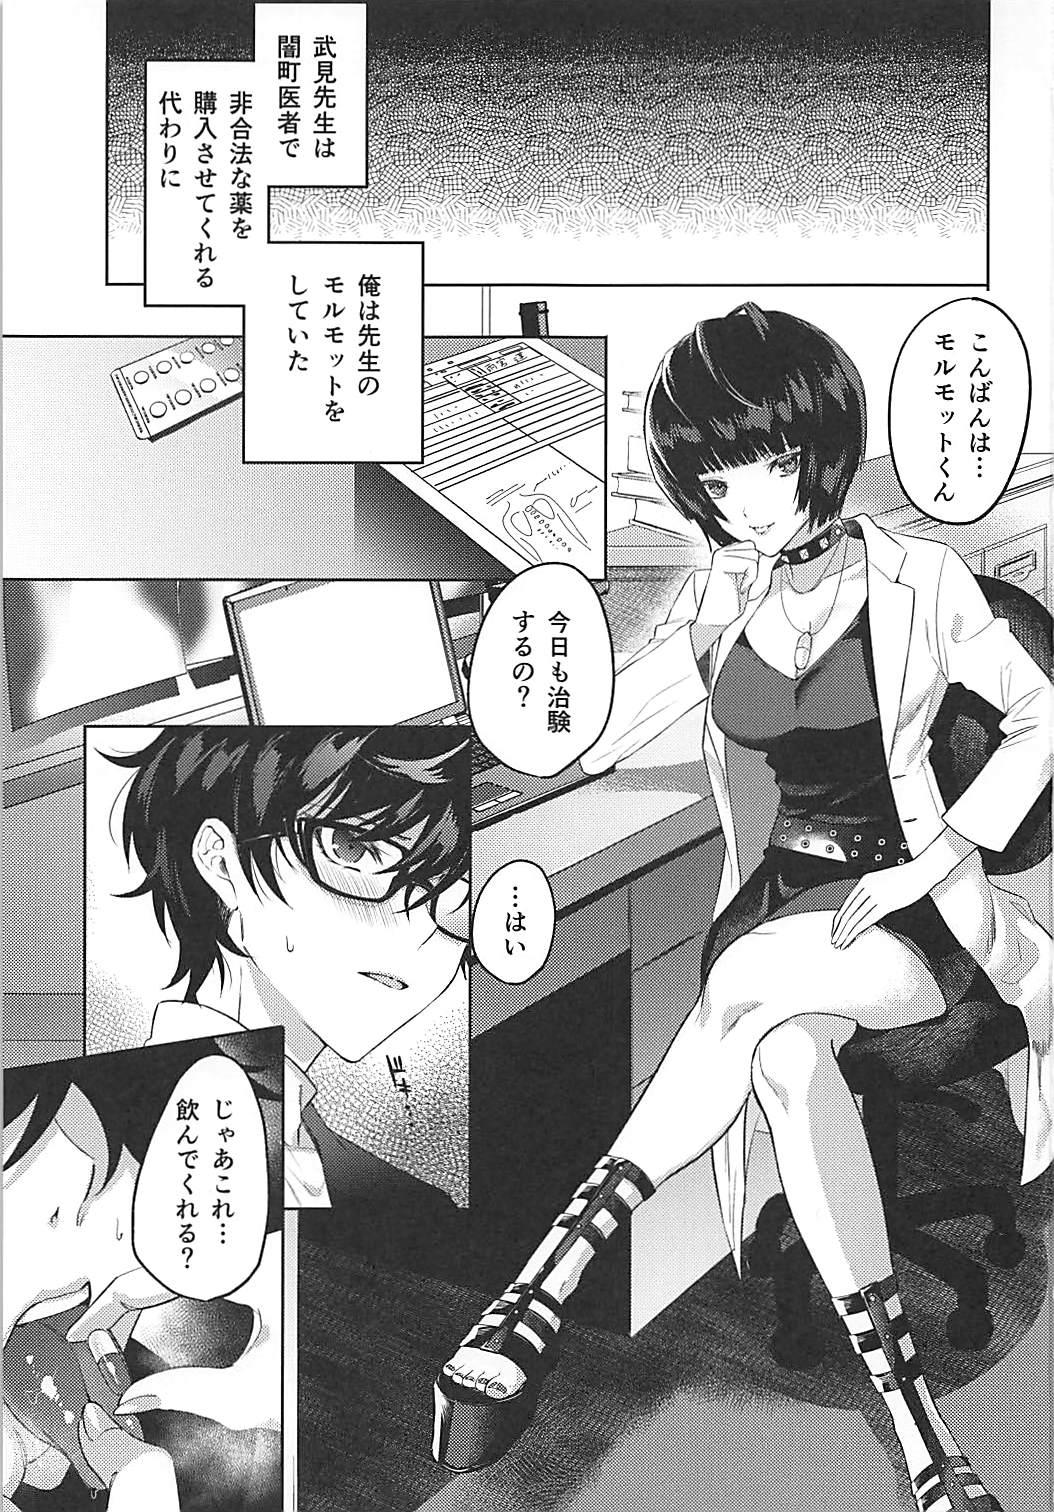 Shesafreak Kimi wa Watashi no Marmot - Persona 5 Dando - Page 2